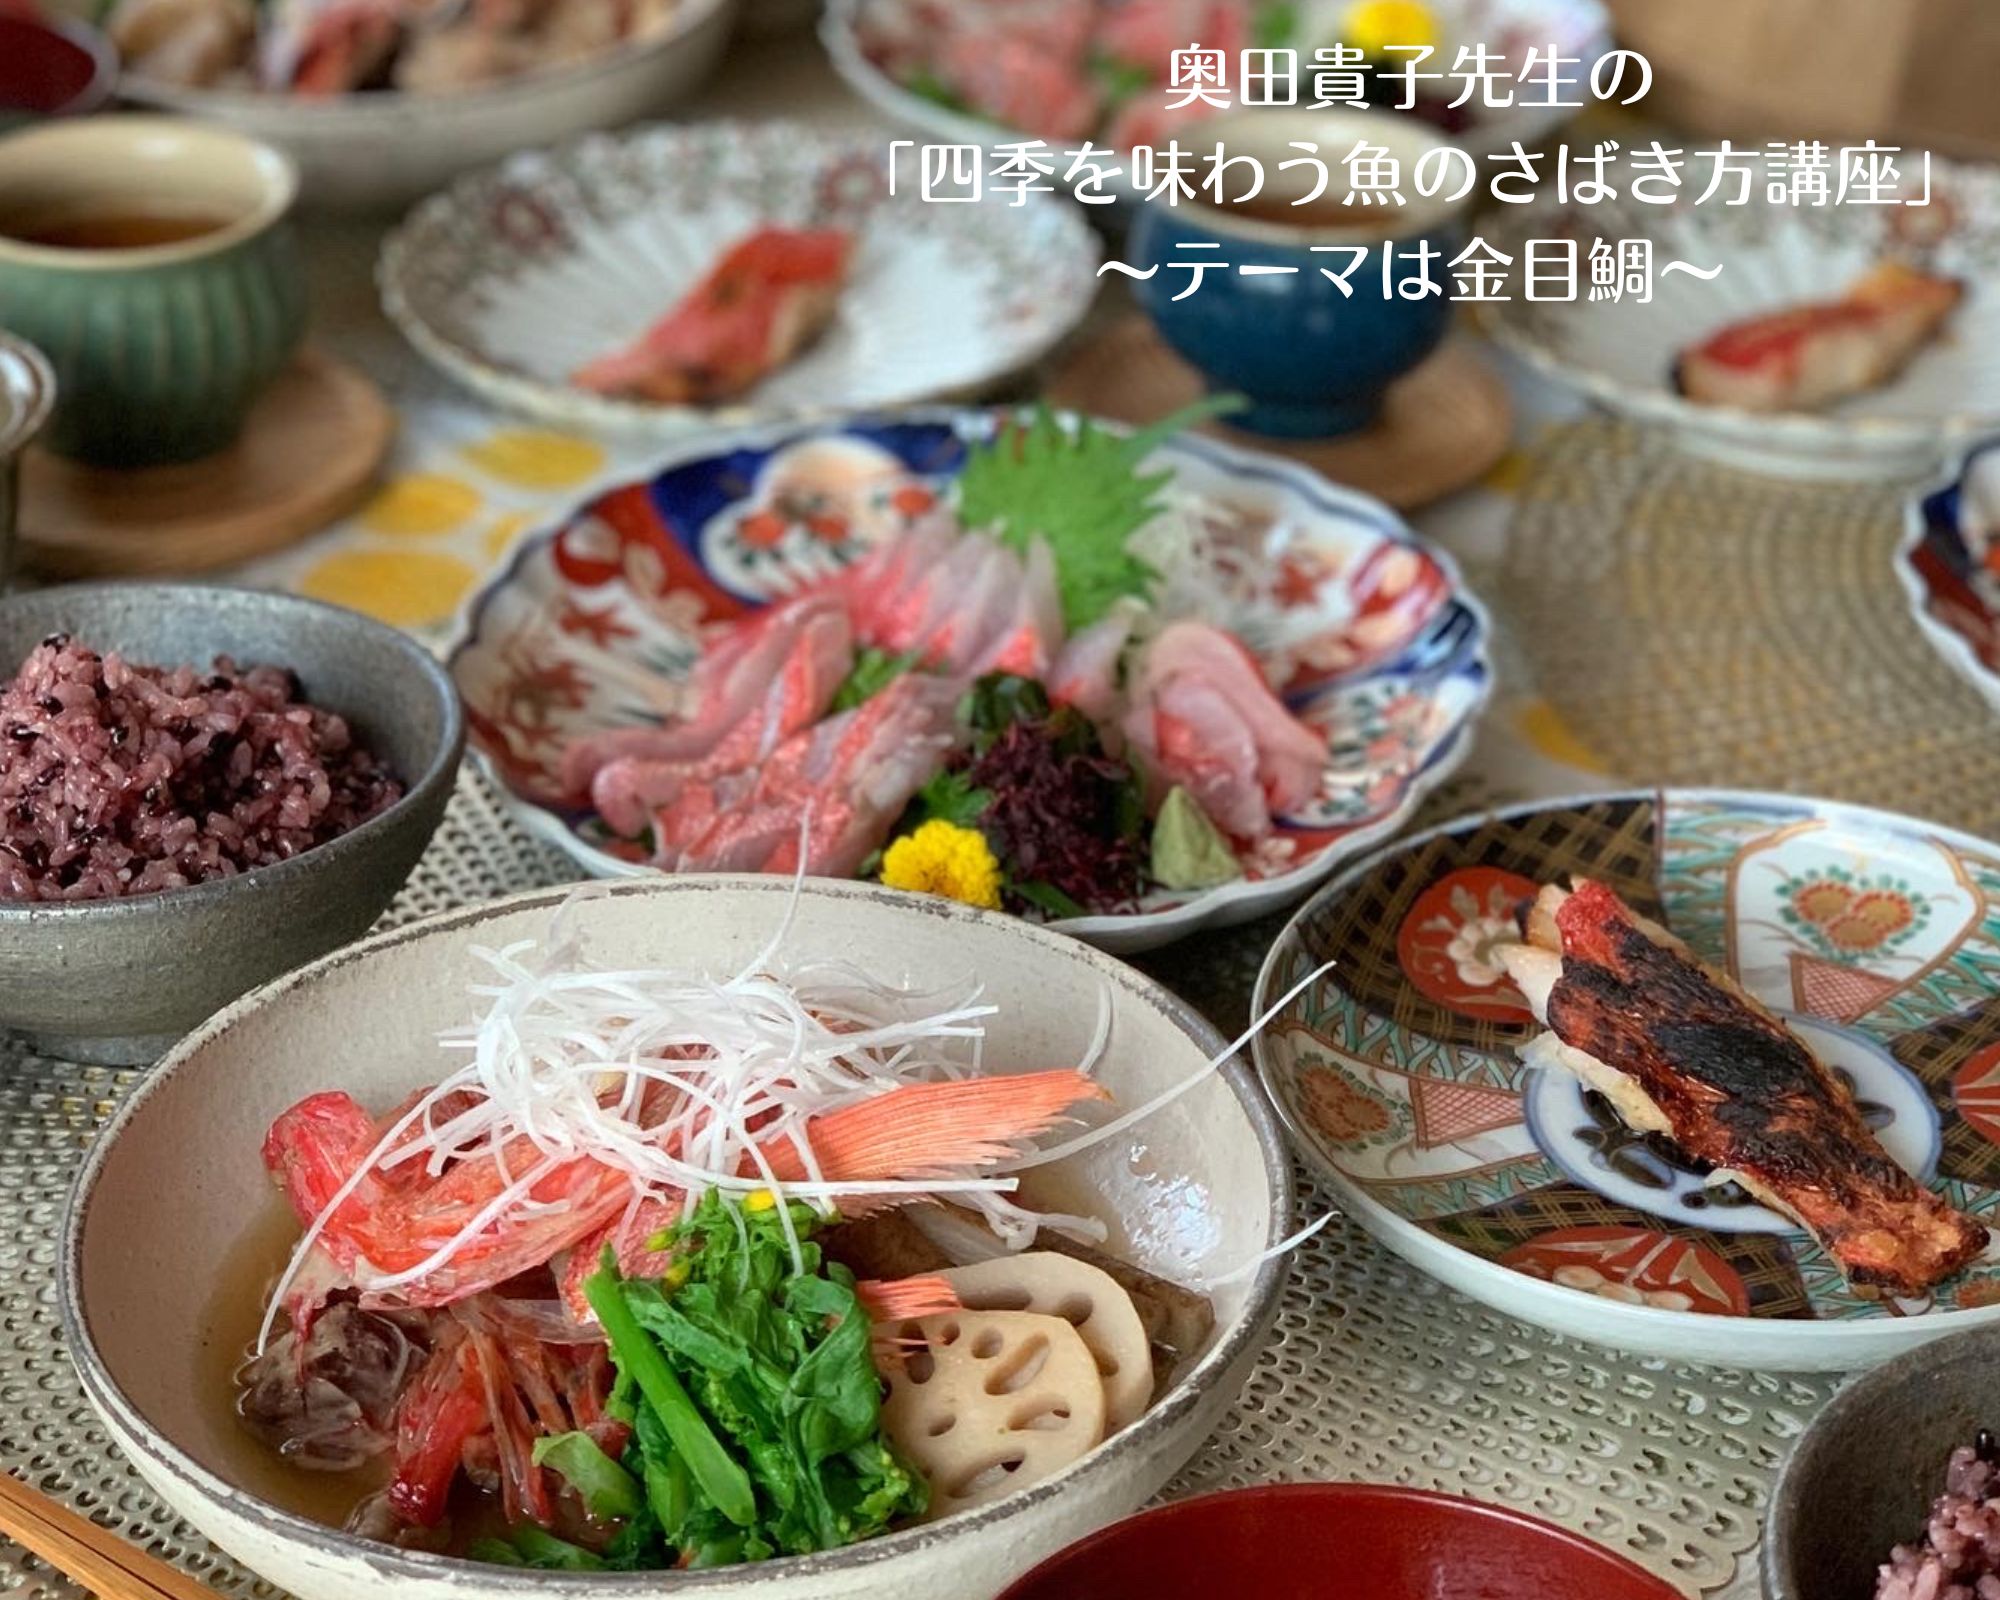 魚をさばく講座 魚料理 奥田貴子先生 料理教室 和食 男性歓迎 金目鯛